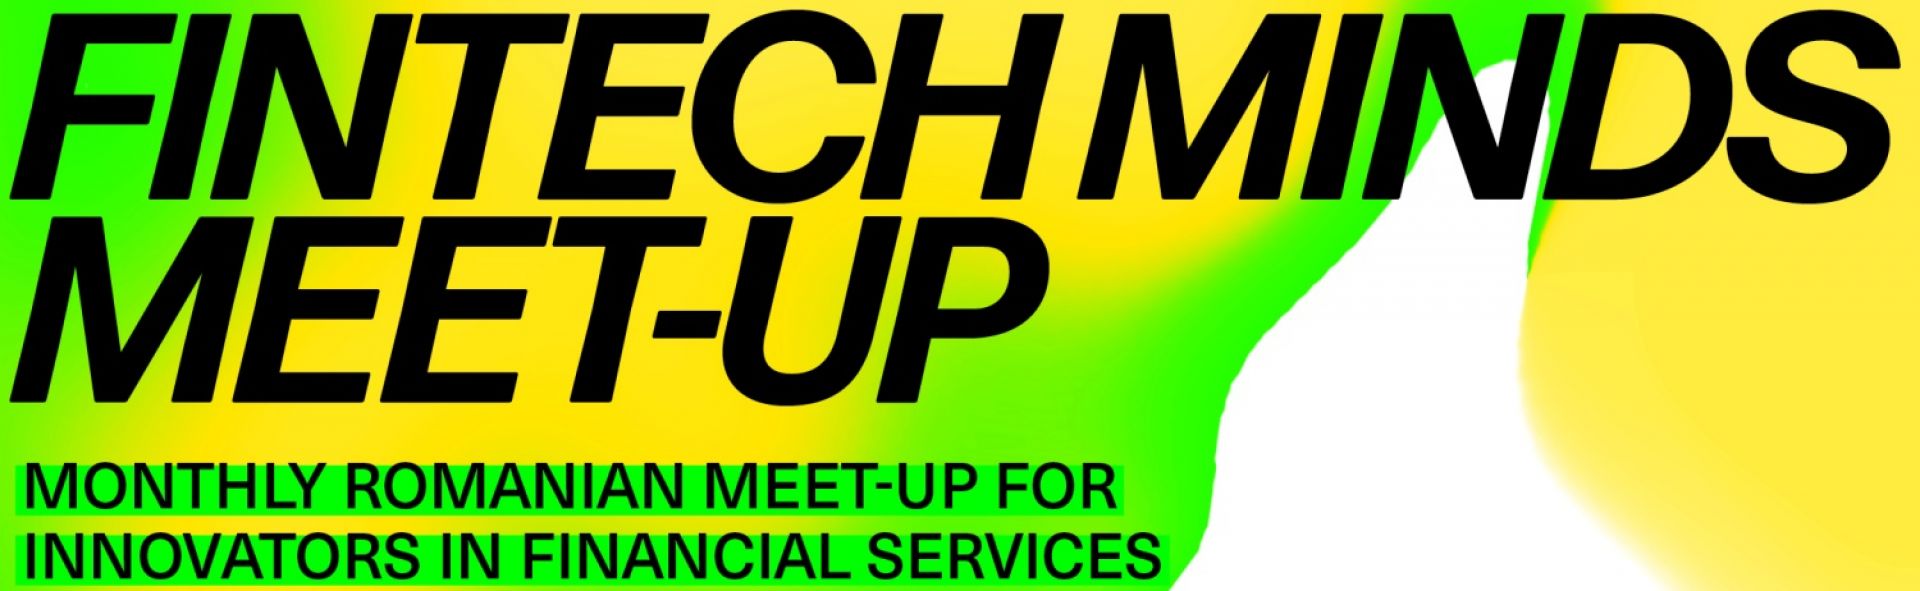 Când sunt programate întâlnirile Fintech Minds Meetup în 2022?